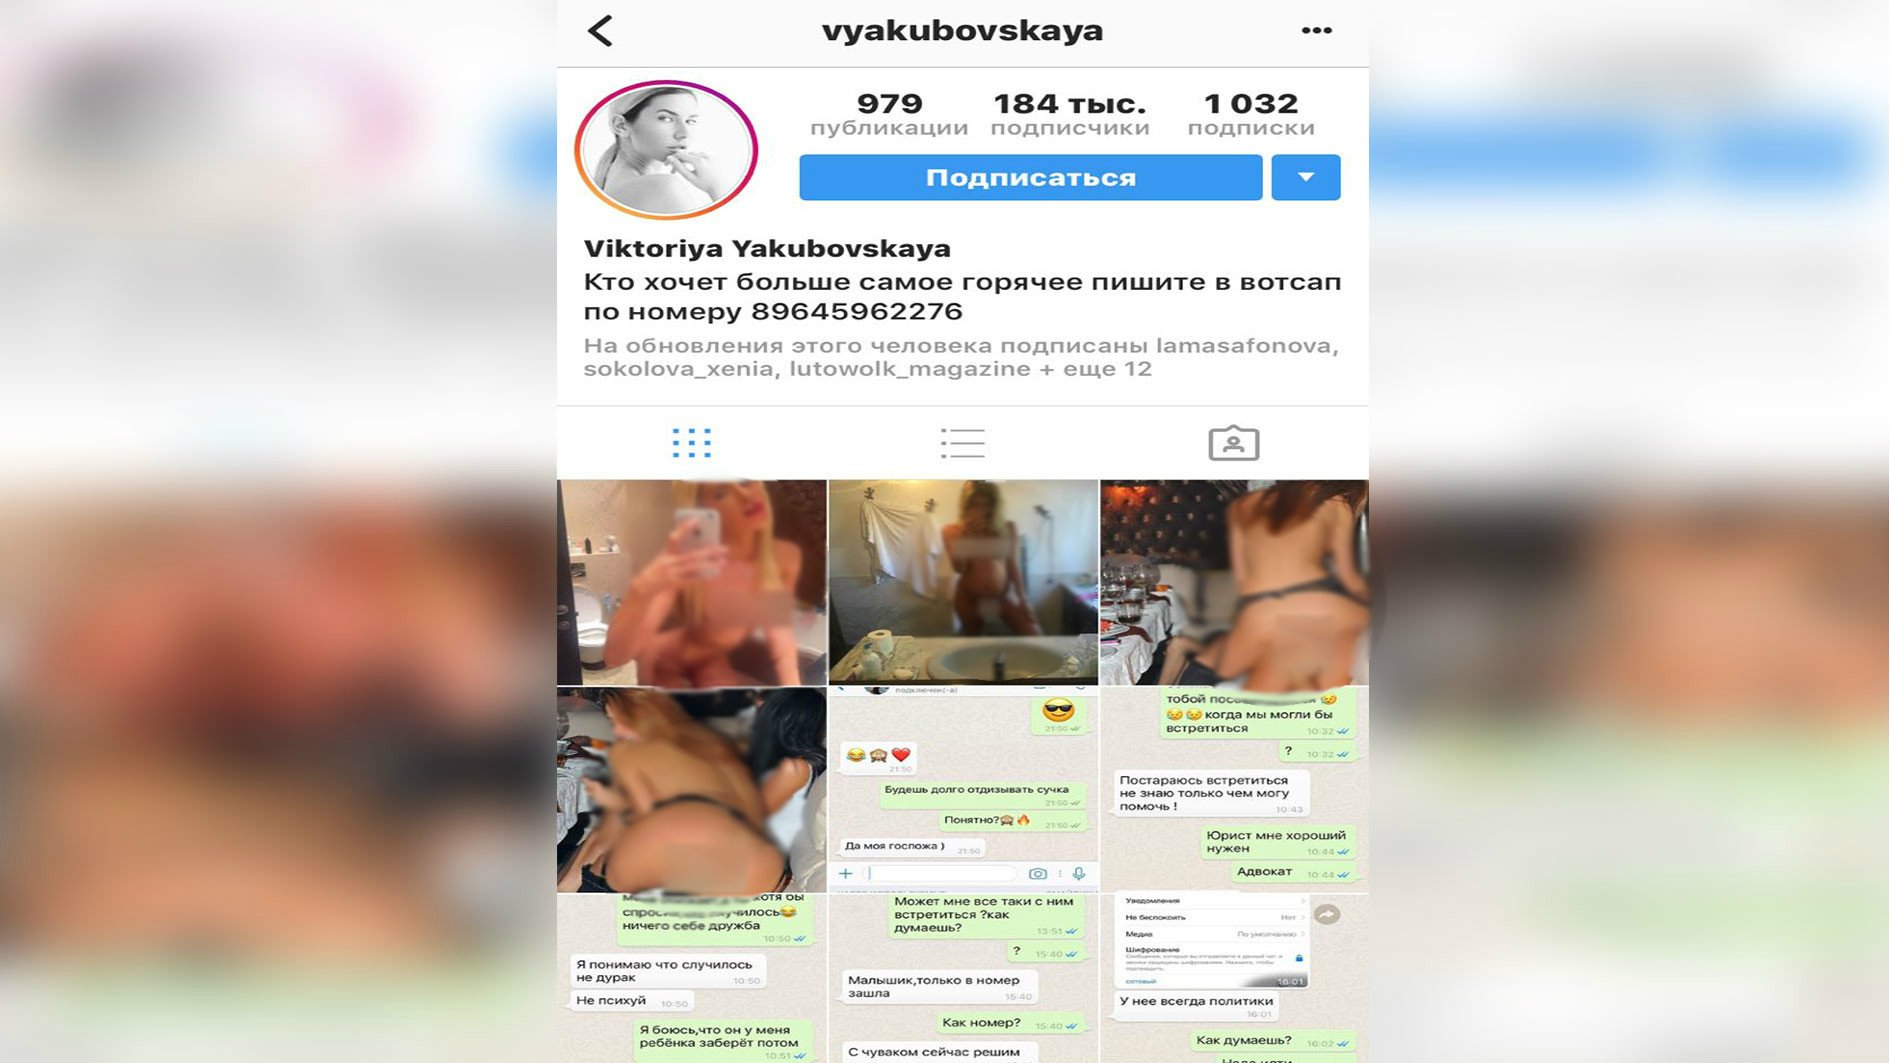 Ночью модераторы Instagram удалили все снимки со страницы согласно правилам...